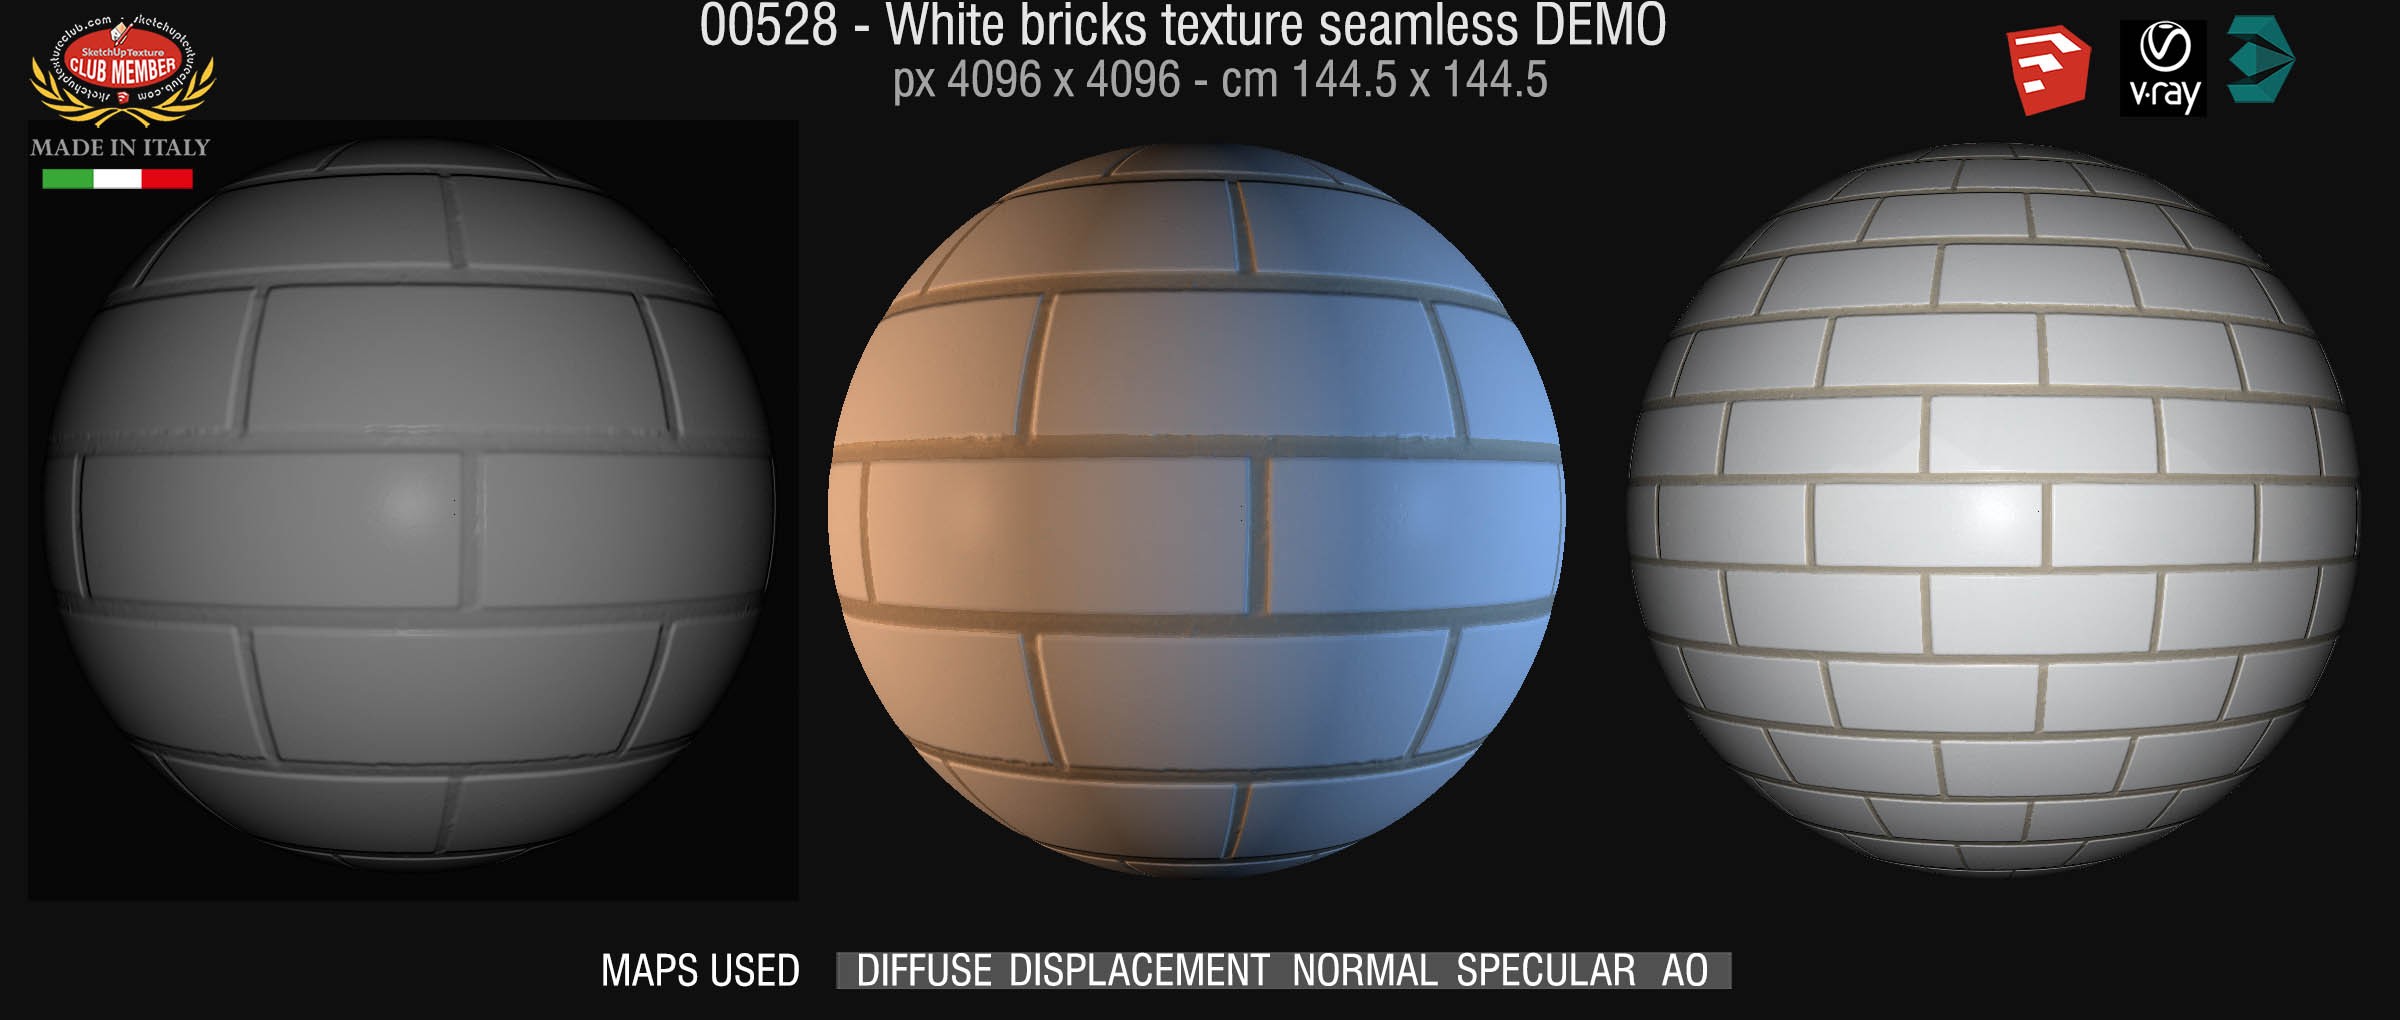 00528 White bricks texture seamless + maps DEMO